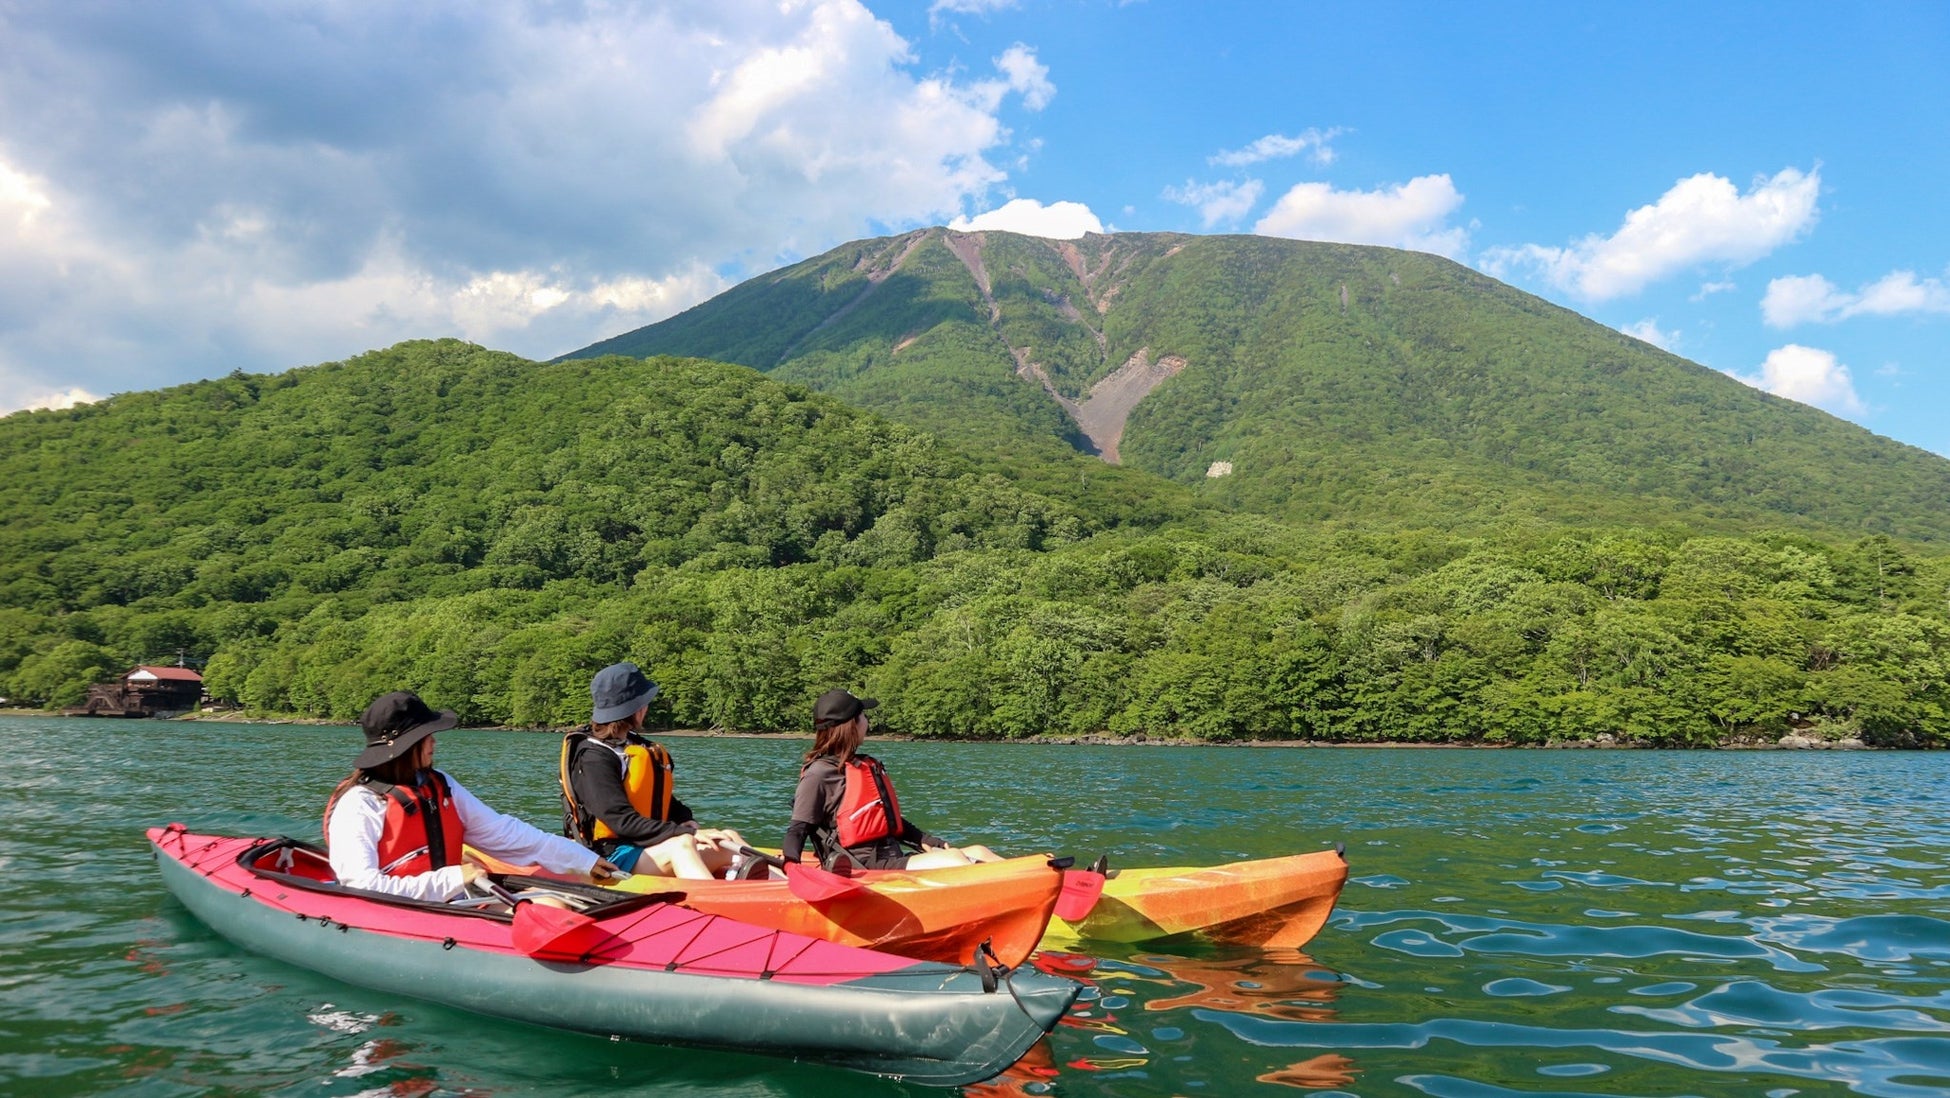 男体山（なんたいさん）の噴火によってできた堰止湖「中禅寺湖」の湖上から望む男体山